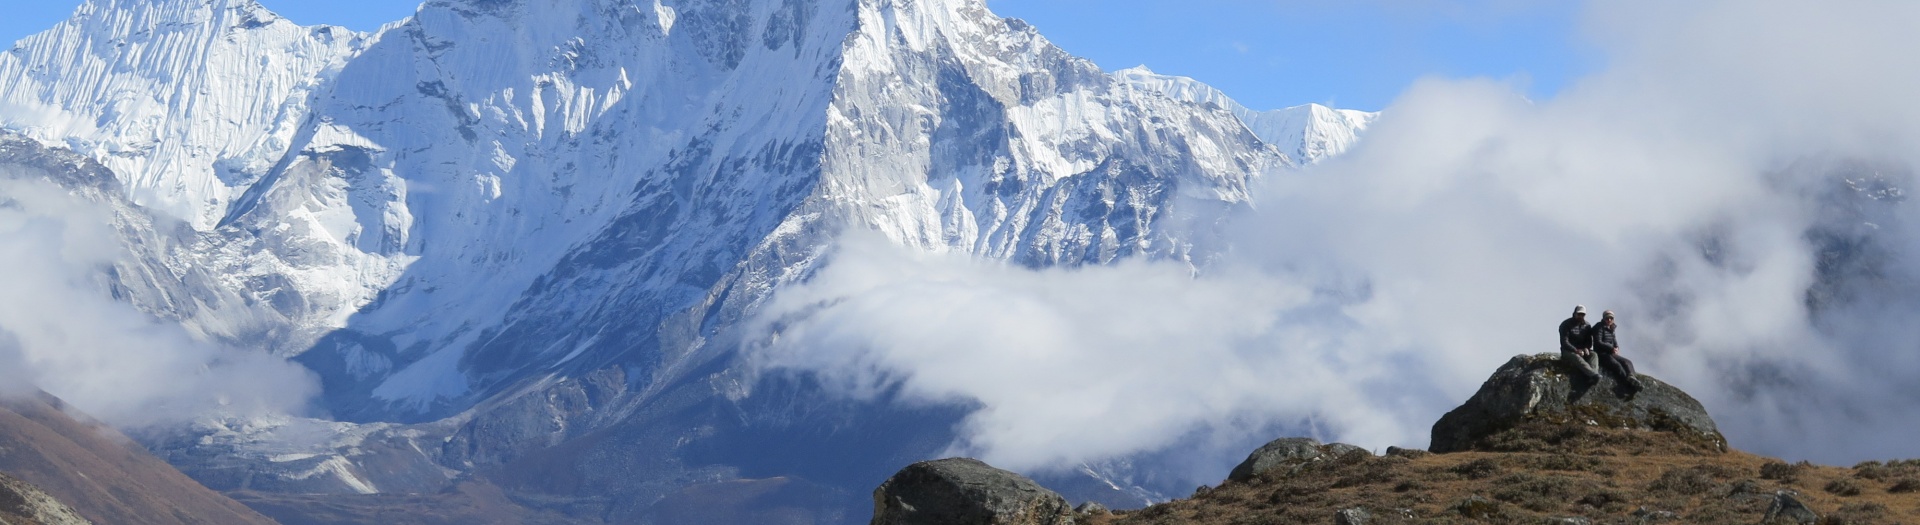 Voyage sur mesure au Népal